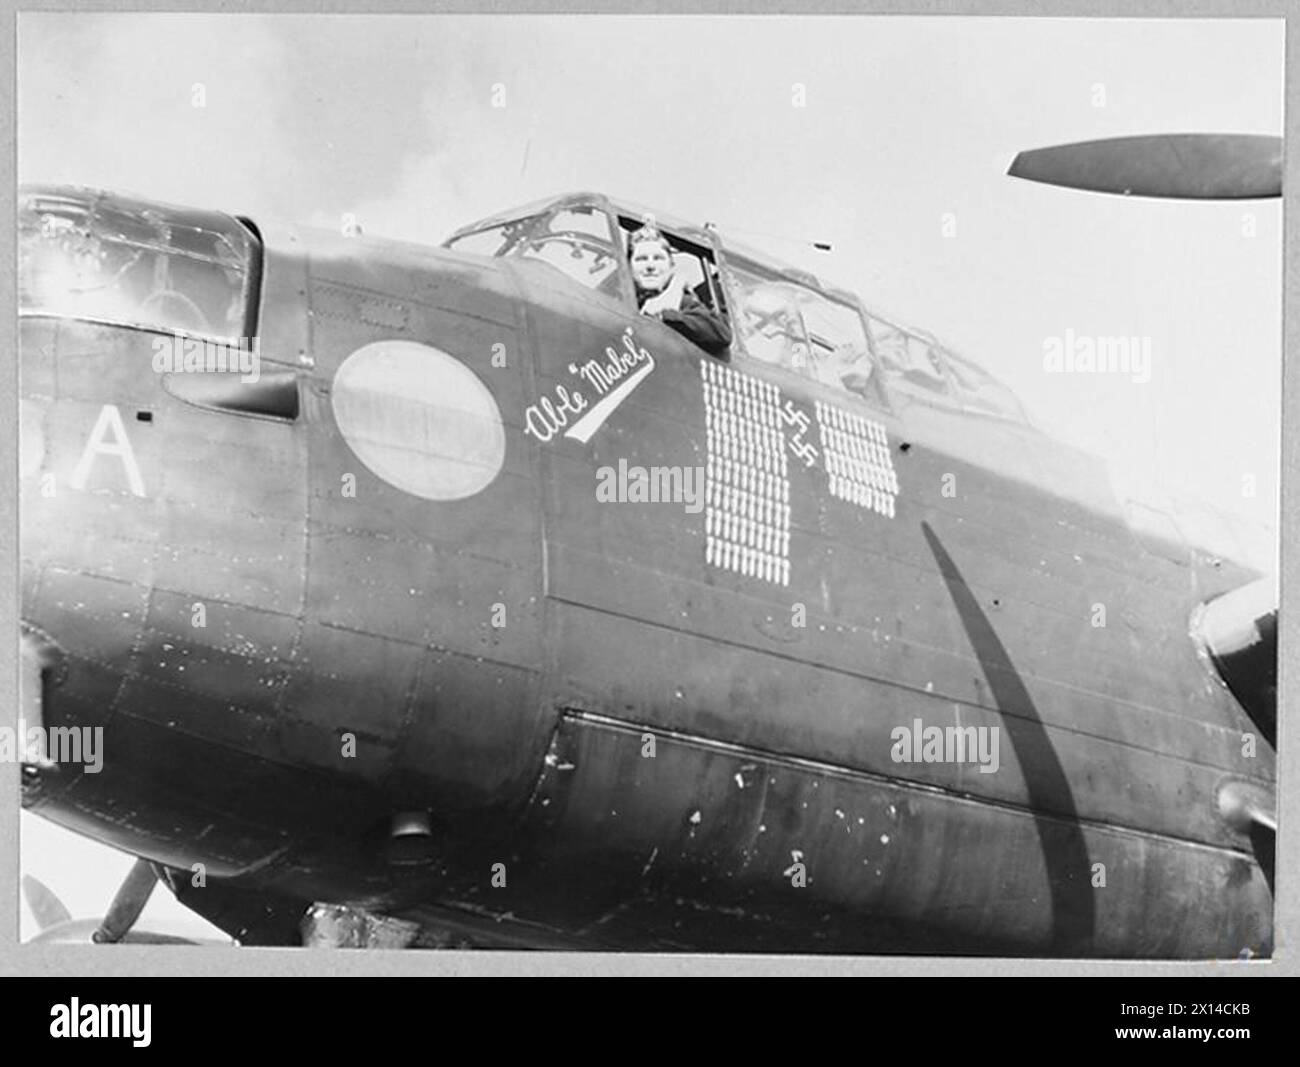 R.A.F. LANCASTER SCHLIESST 121 OPS AB - Picture (ausgestellt 1945) Shows - Flight Lieutenant J.D. Playford, 23 Jahre alt von 55 Watson Avenue, Tornoto, Piloten der Lancaster 'Abable Mabel', die 121 operative Flüge mit dem R.A.F. Bomber Command absolviert hat. Ihre Geschütze haben zwei feindliche Kämpfer abgeschossen, wie die Hakenkreuze unter ihrem Bombenbaum die Royal Air Force zeigen Stockfoto